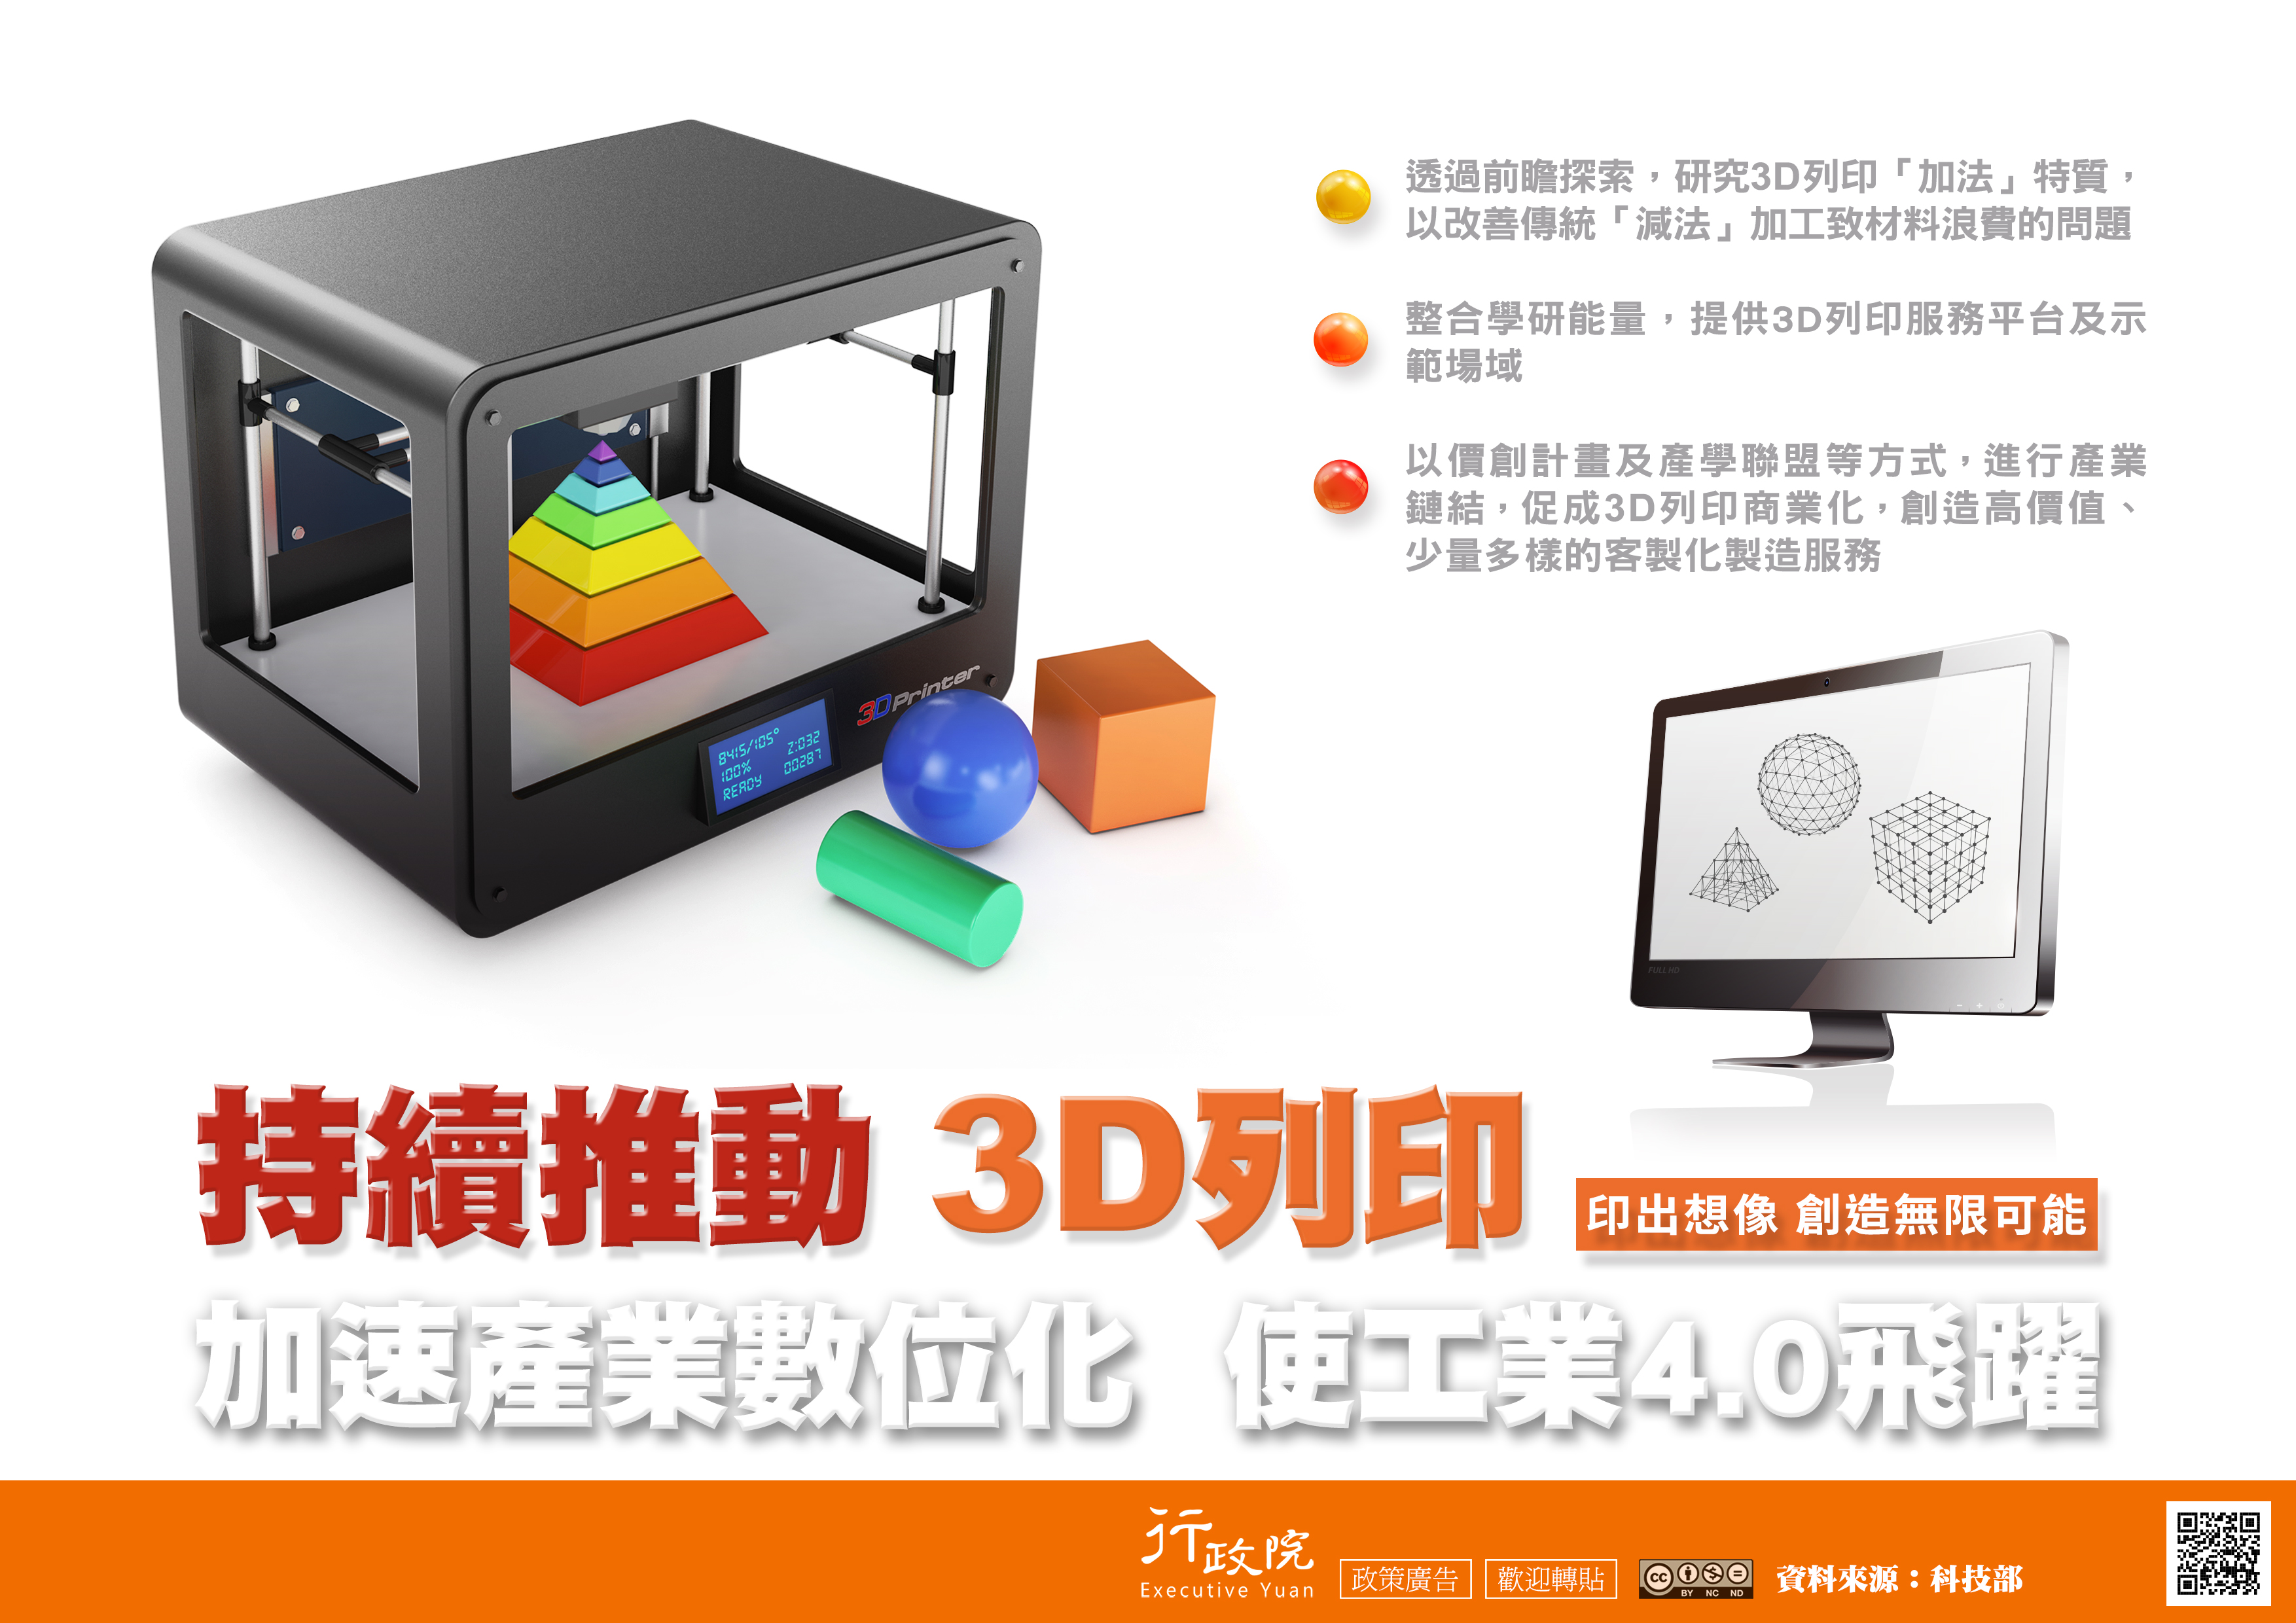 行政院宣導文宣—「持續推動3D列印」 